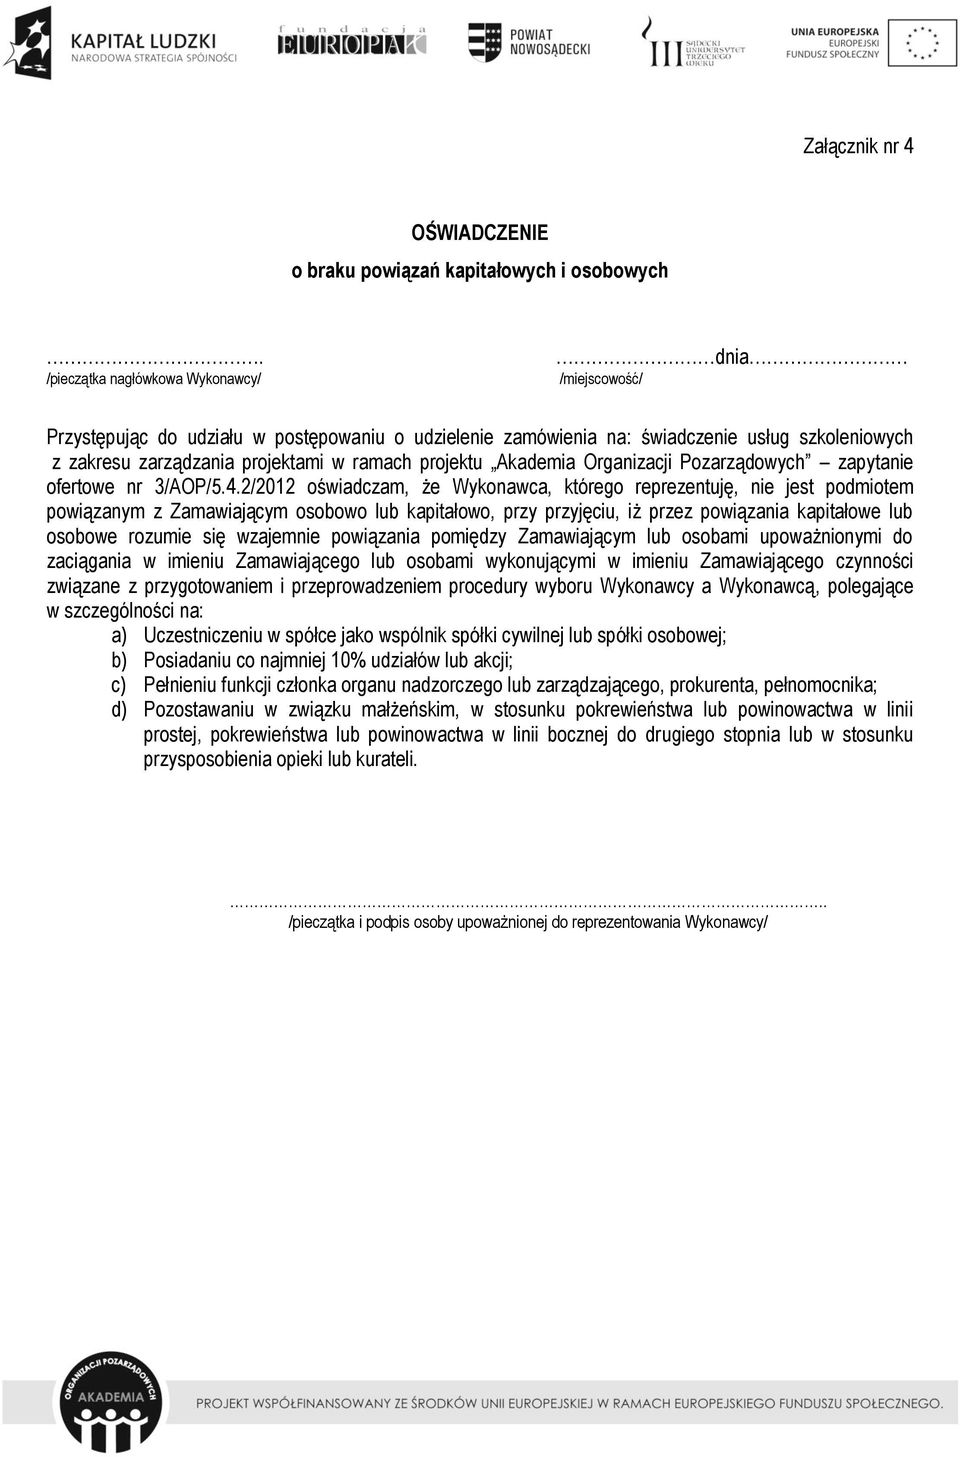 projektu Akademia Organizacji Pozarządowych zapytanie ofertowe nr 3/AOP/5.4.